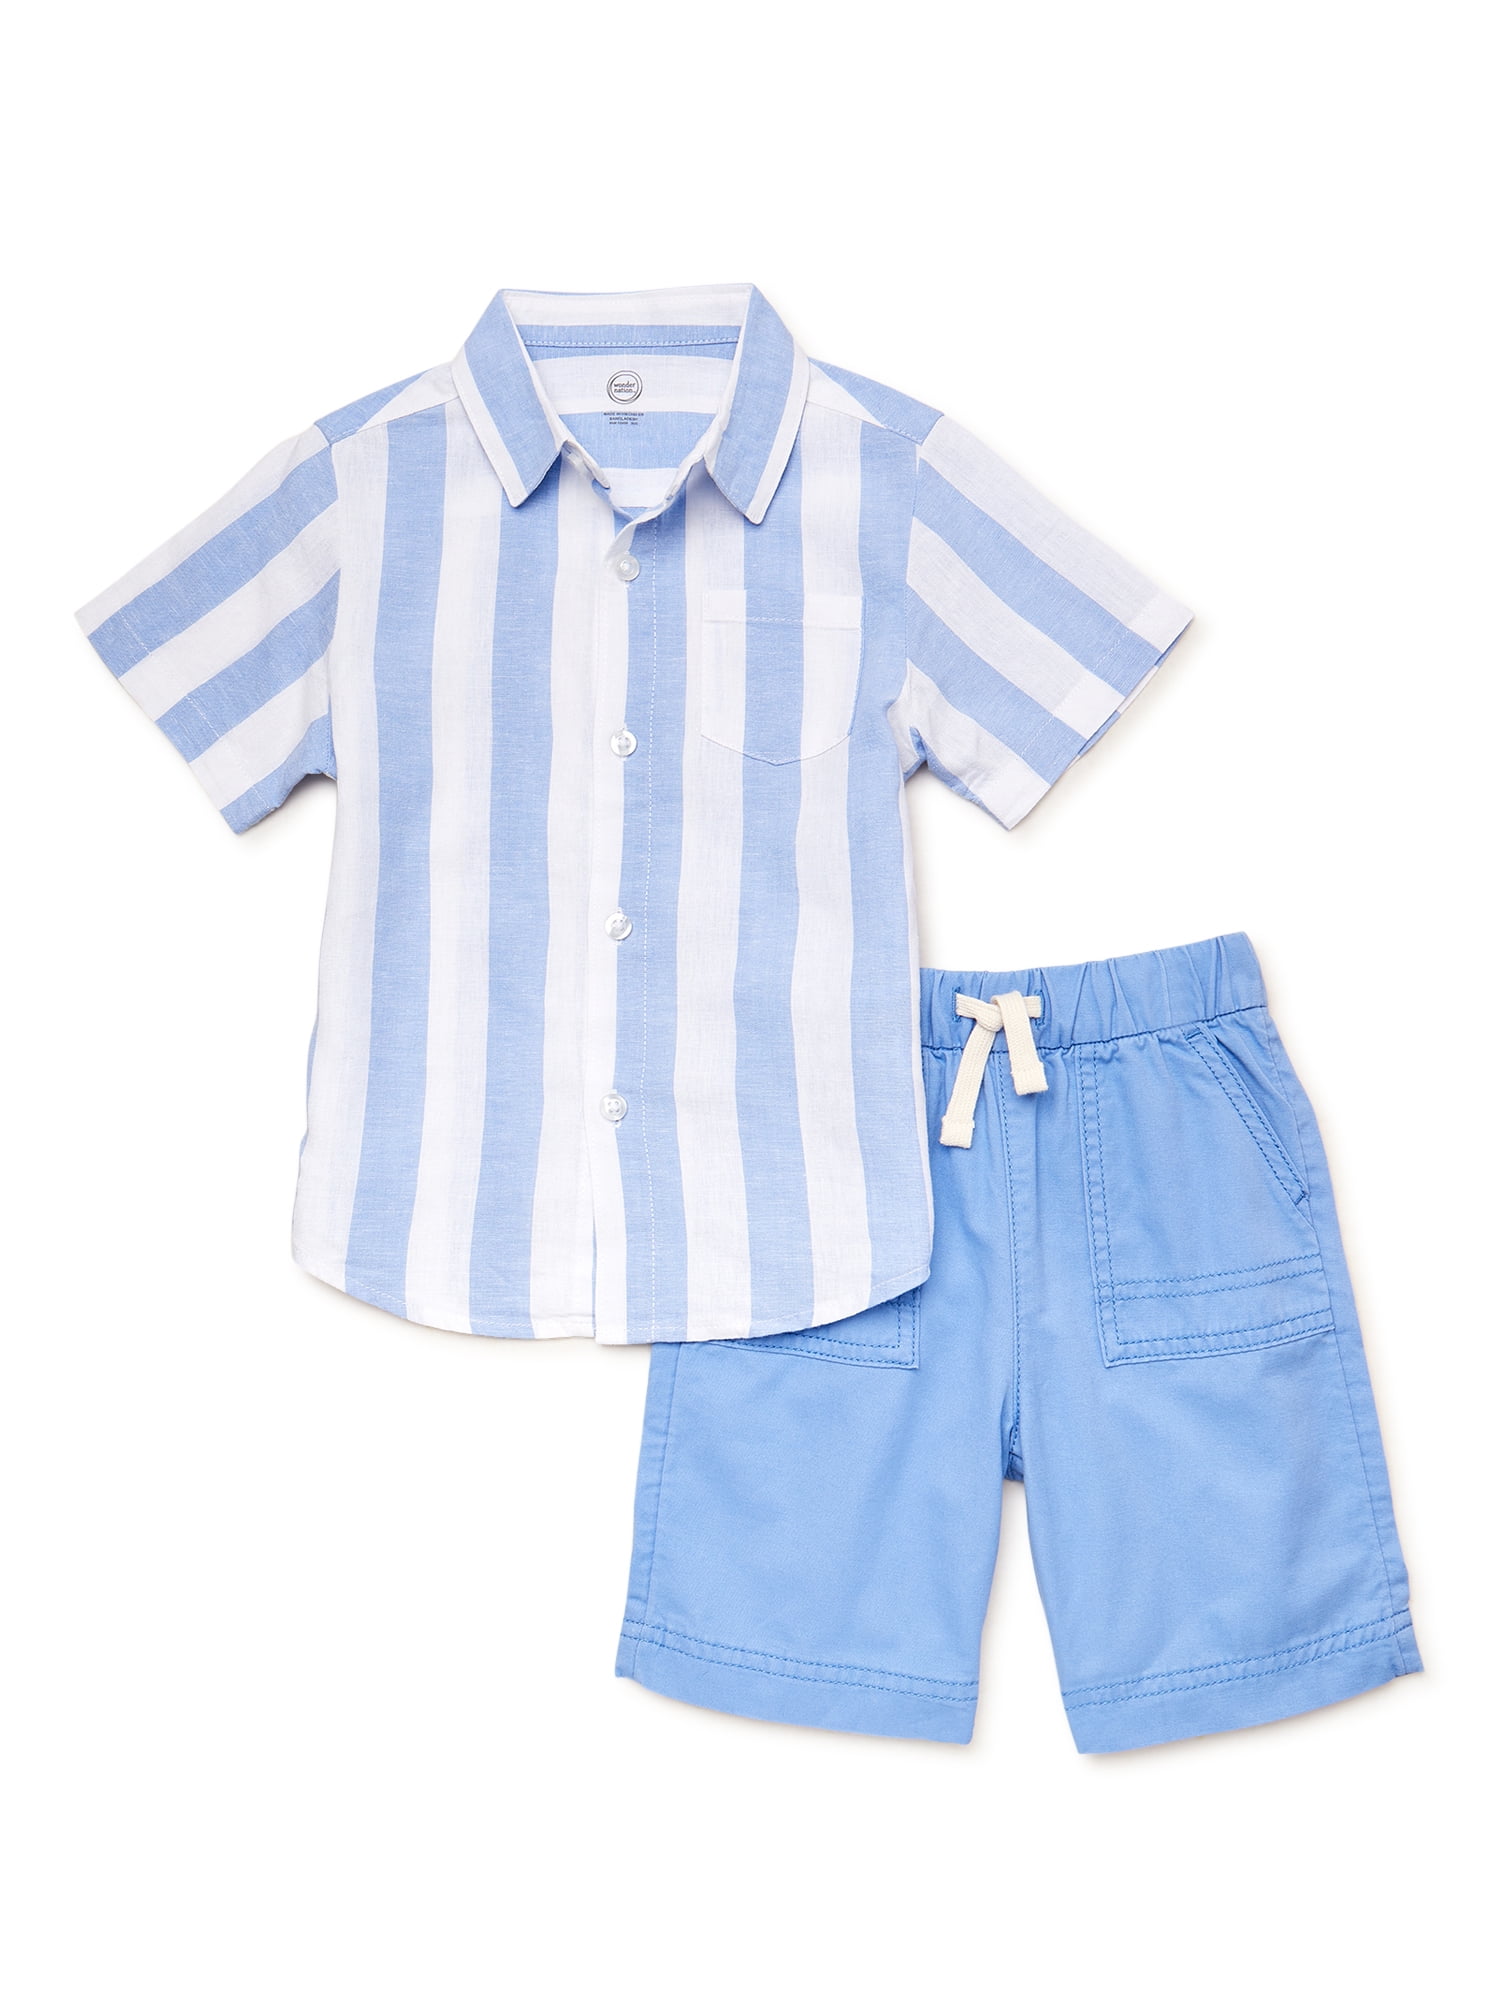 Wonder Nation Toddler Boy's Short Sleeve Set, 2 Piece, Sizes 12 Months - 5T